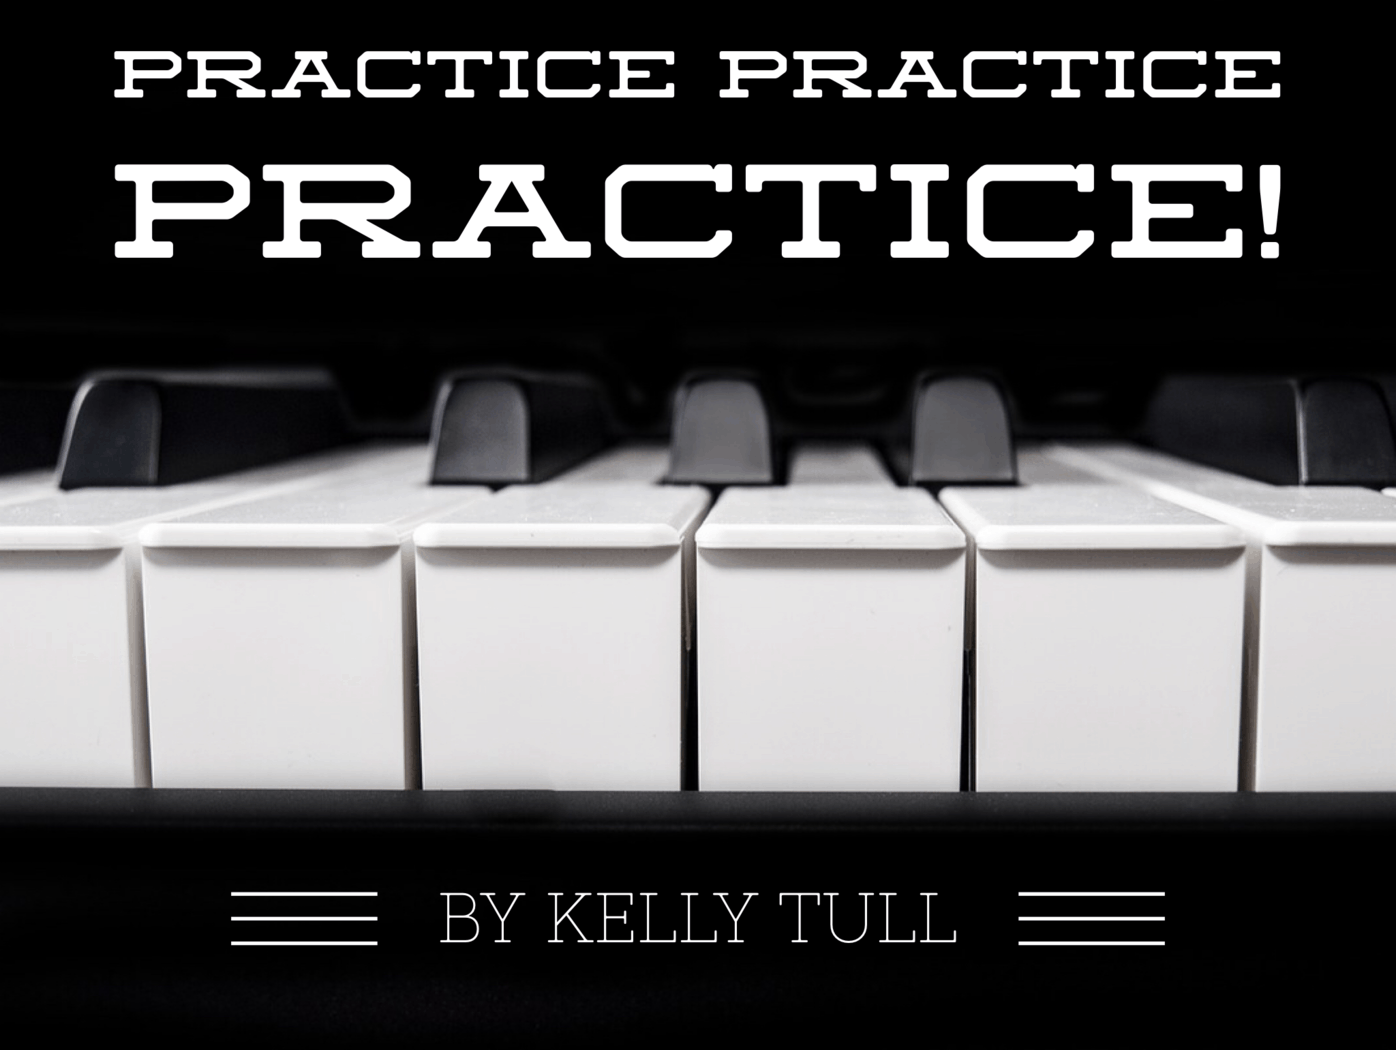 Practice Practice Practice!